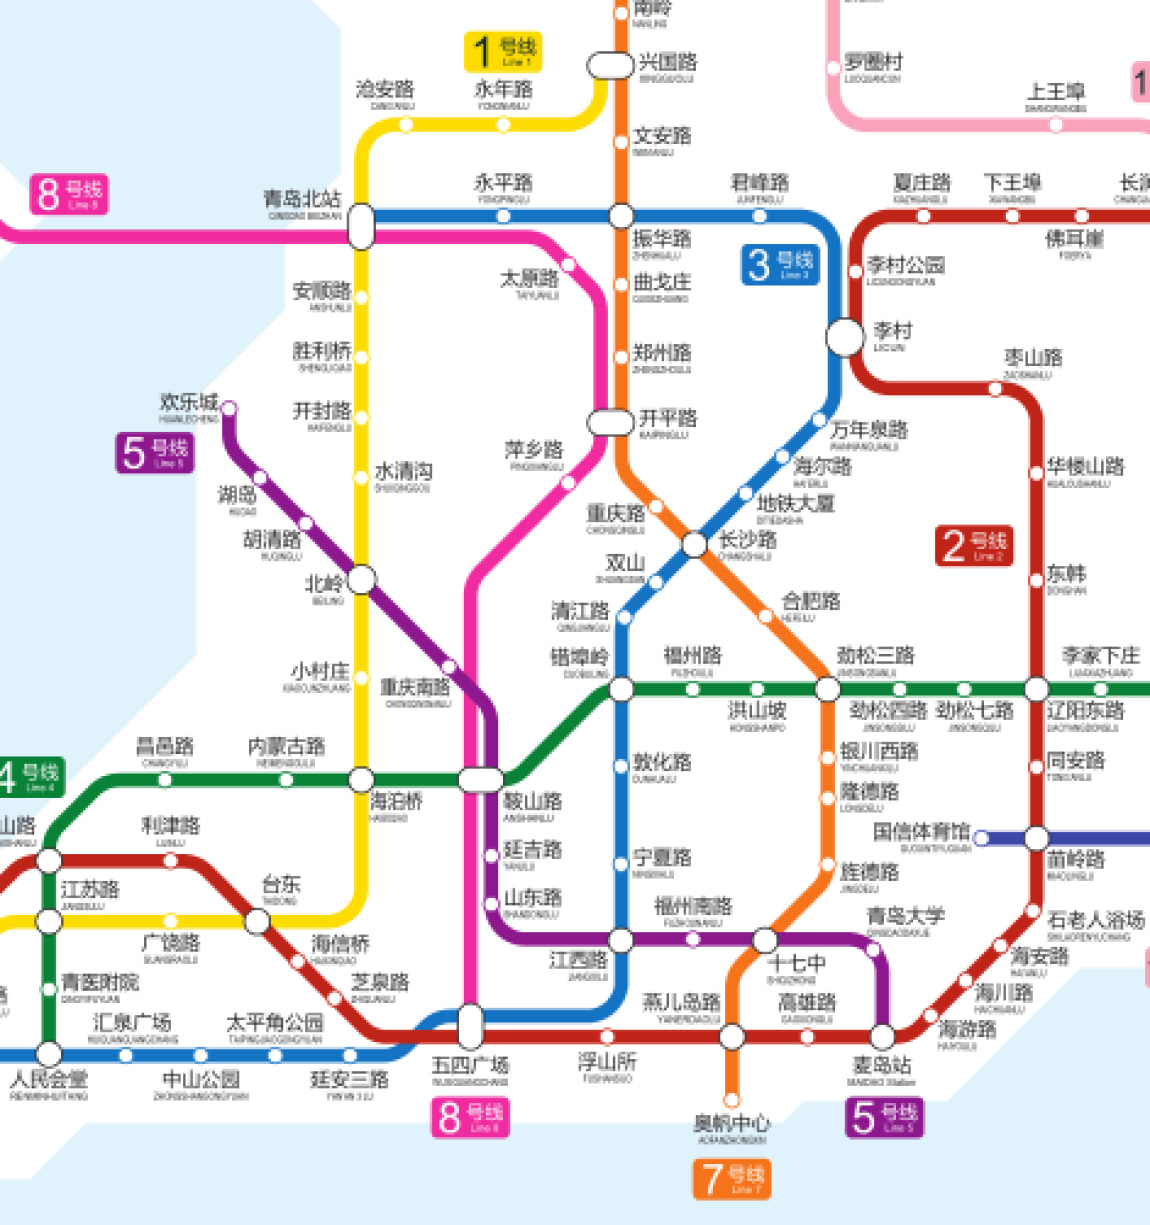 七条地铁线齐开 根据《青岛市城市轨道交通近期建设规划(2017-2023)》